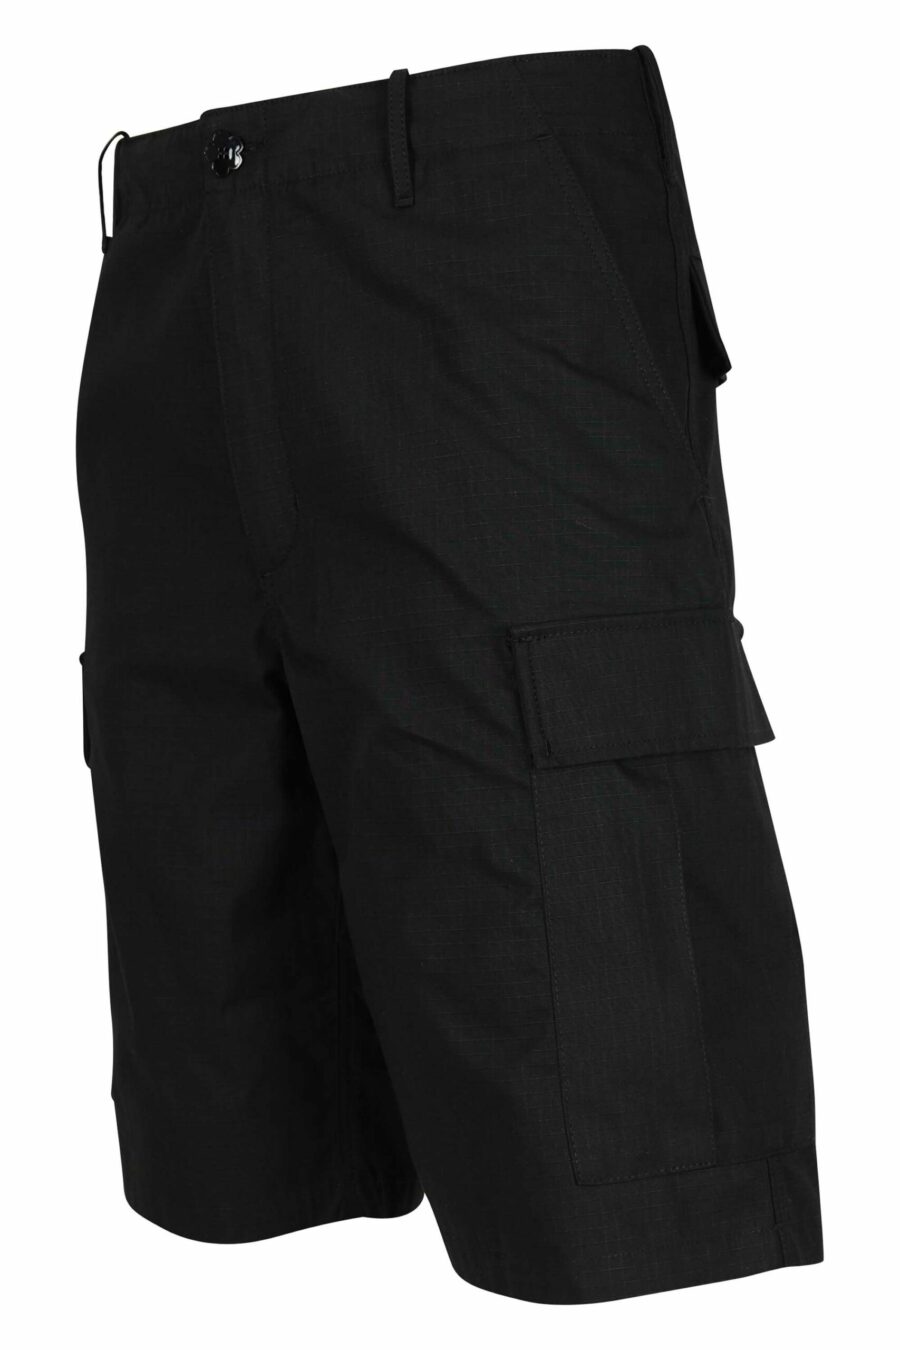 Pantalón negro corto estilo cargo con logo "boke flower" - 3612230618985 1 scaled